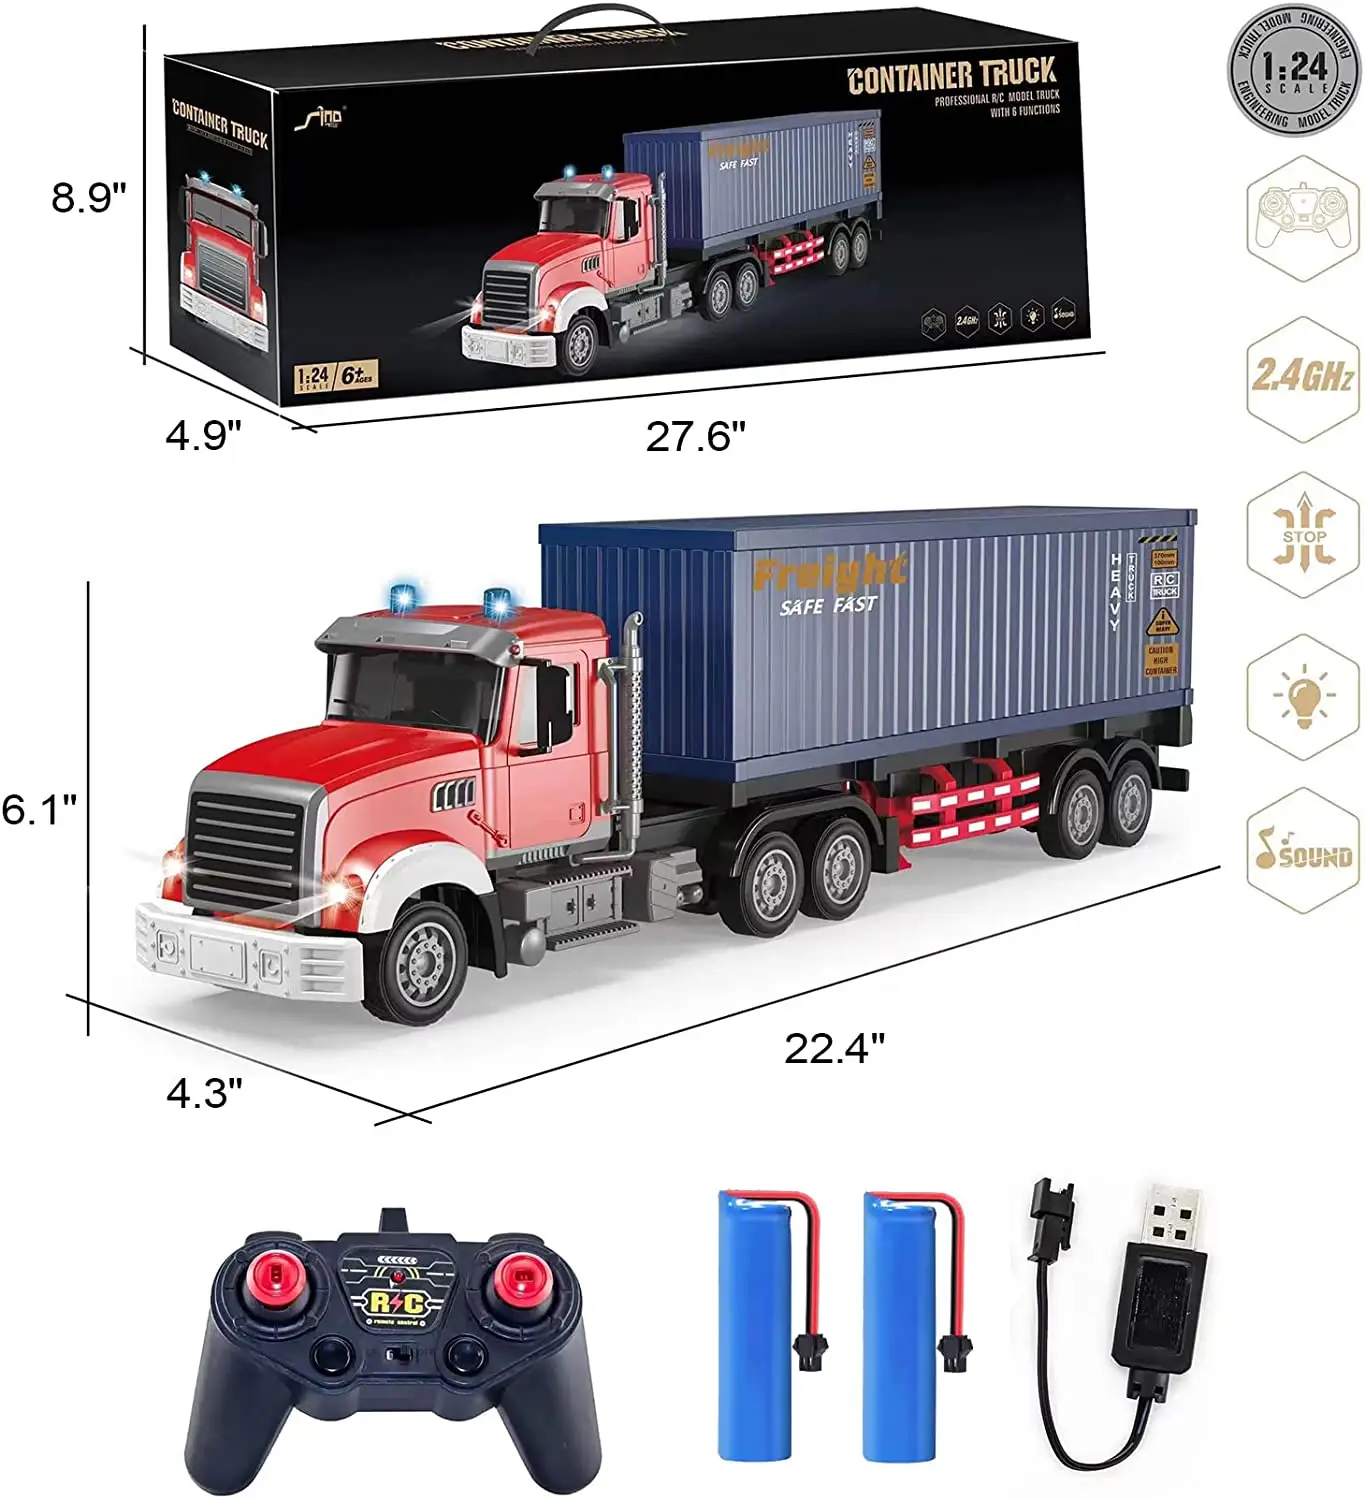 DWI Dowellin rc camion jouet télécommande avec remorque semi remorque cargo transporteur conteneur camion pneu rc voiture jouets